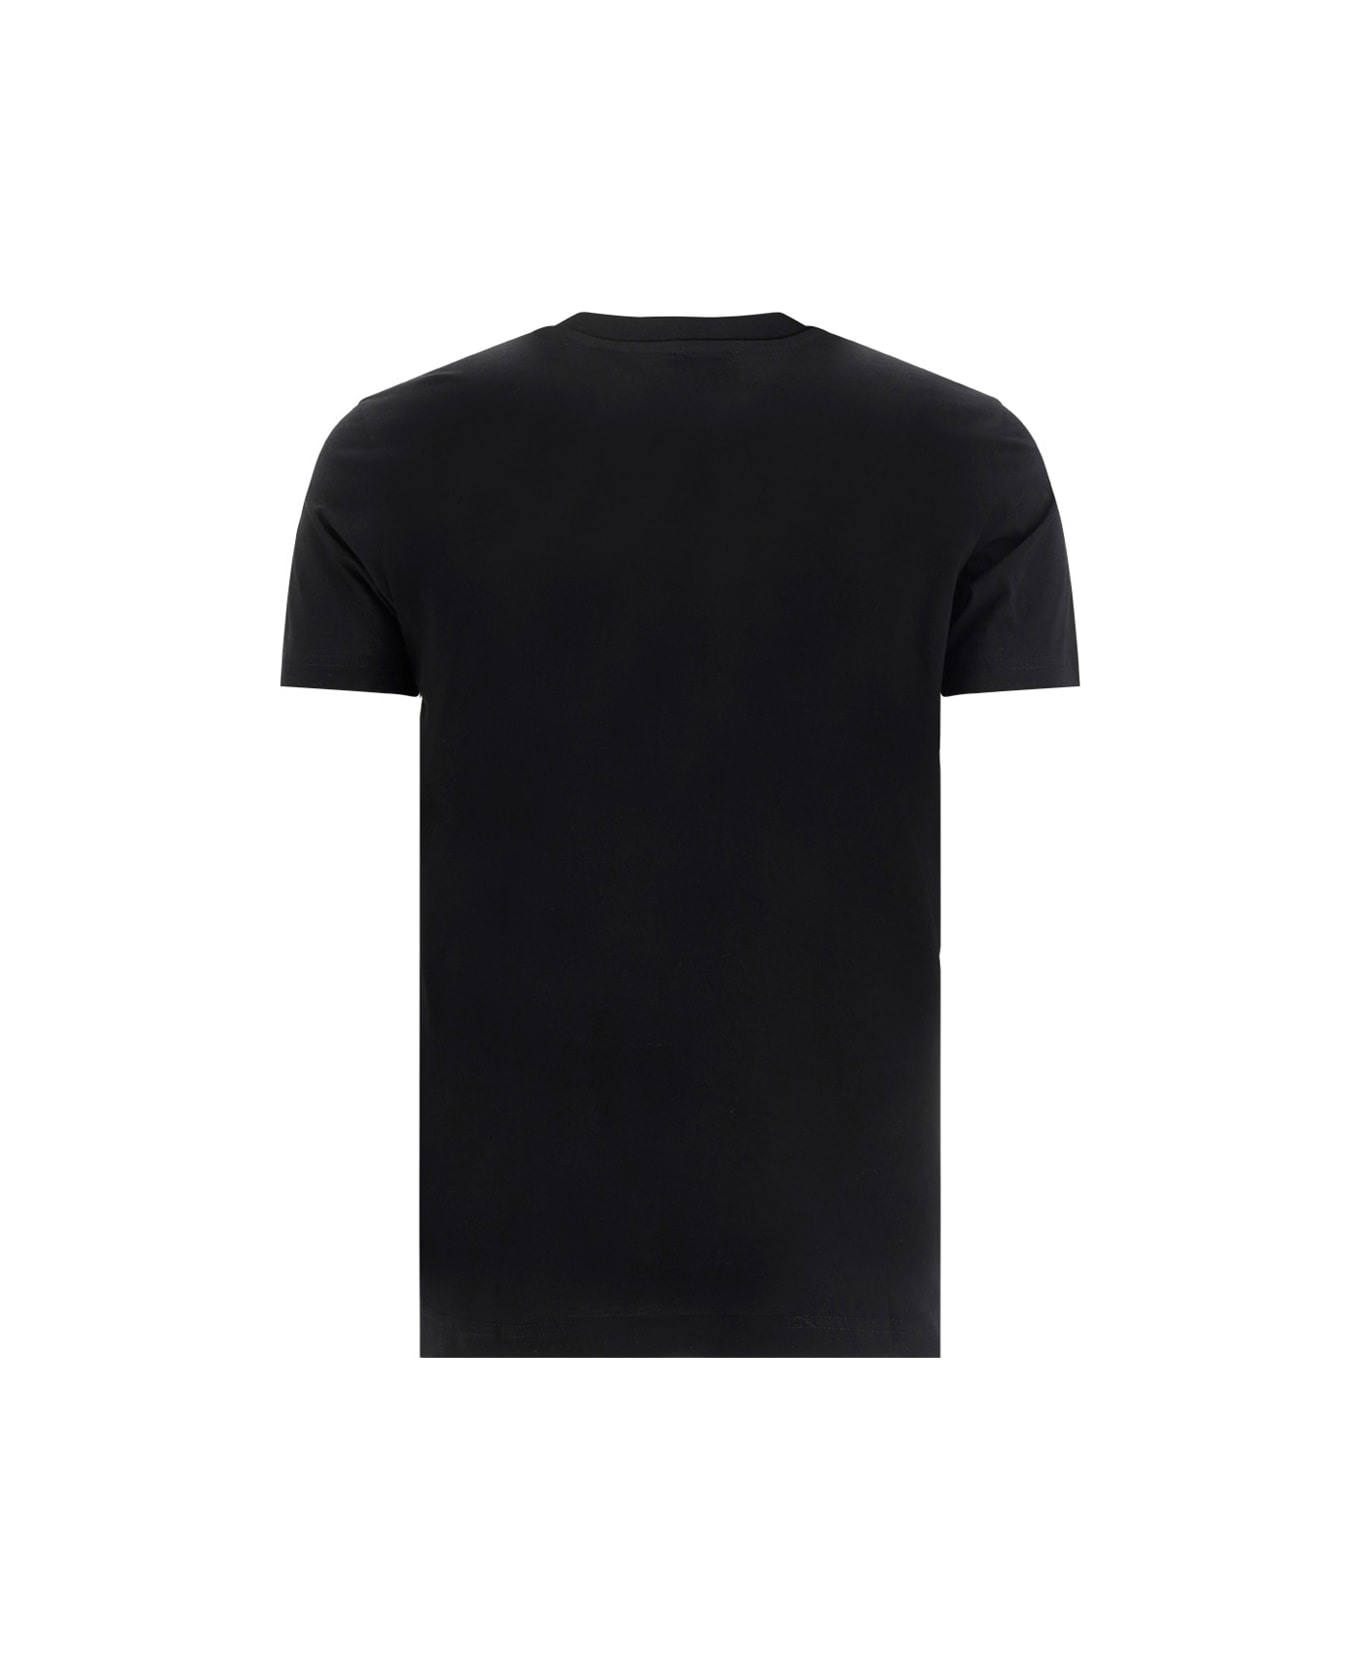 Diesel T-diegor T-shirt - Black